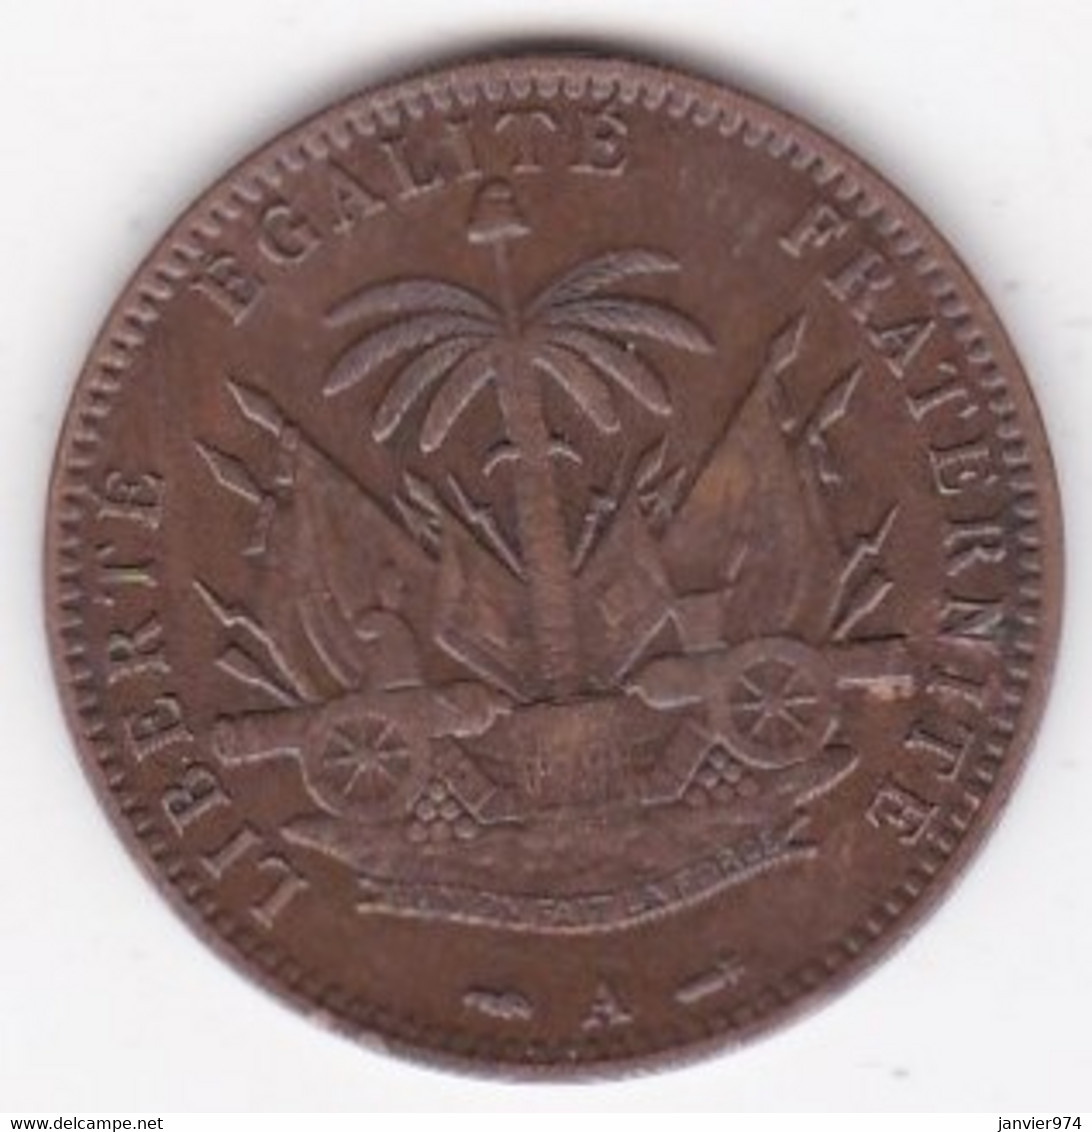 REPUBLIQUE D'HAITI. 1 CENTIME 1886 Paris AN 83. BRONZE .KM# 48 - Haïti